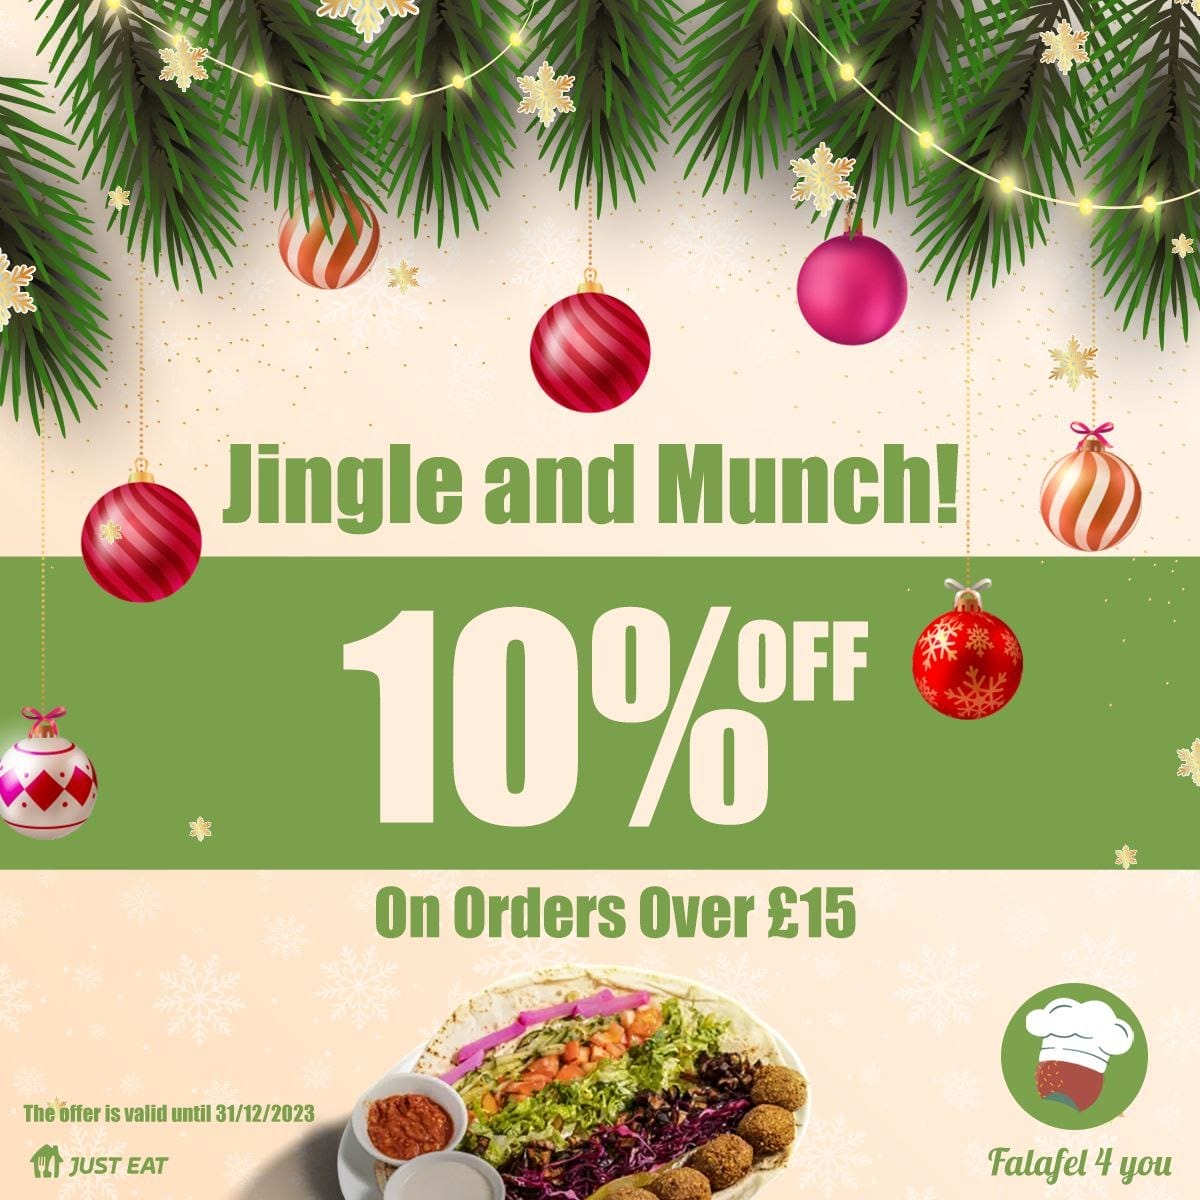 Enjoy 10% OFF on Orders Over £15 at Falafel4You!